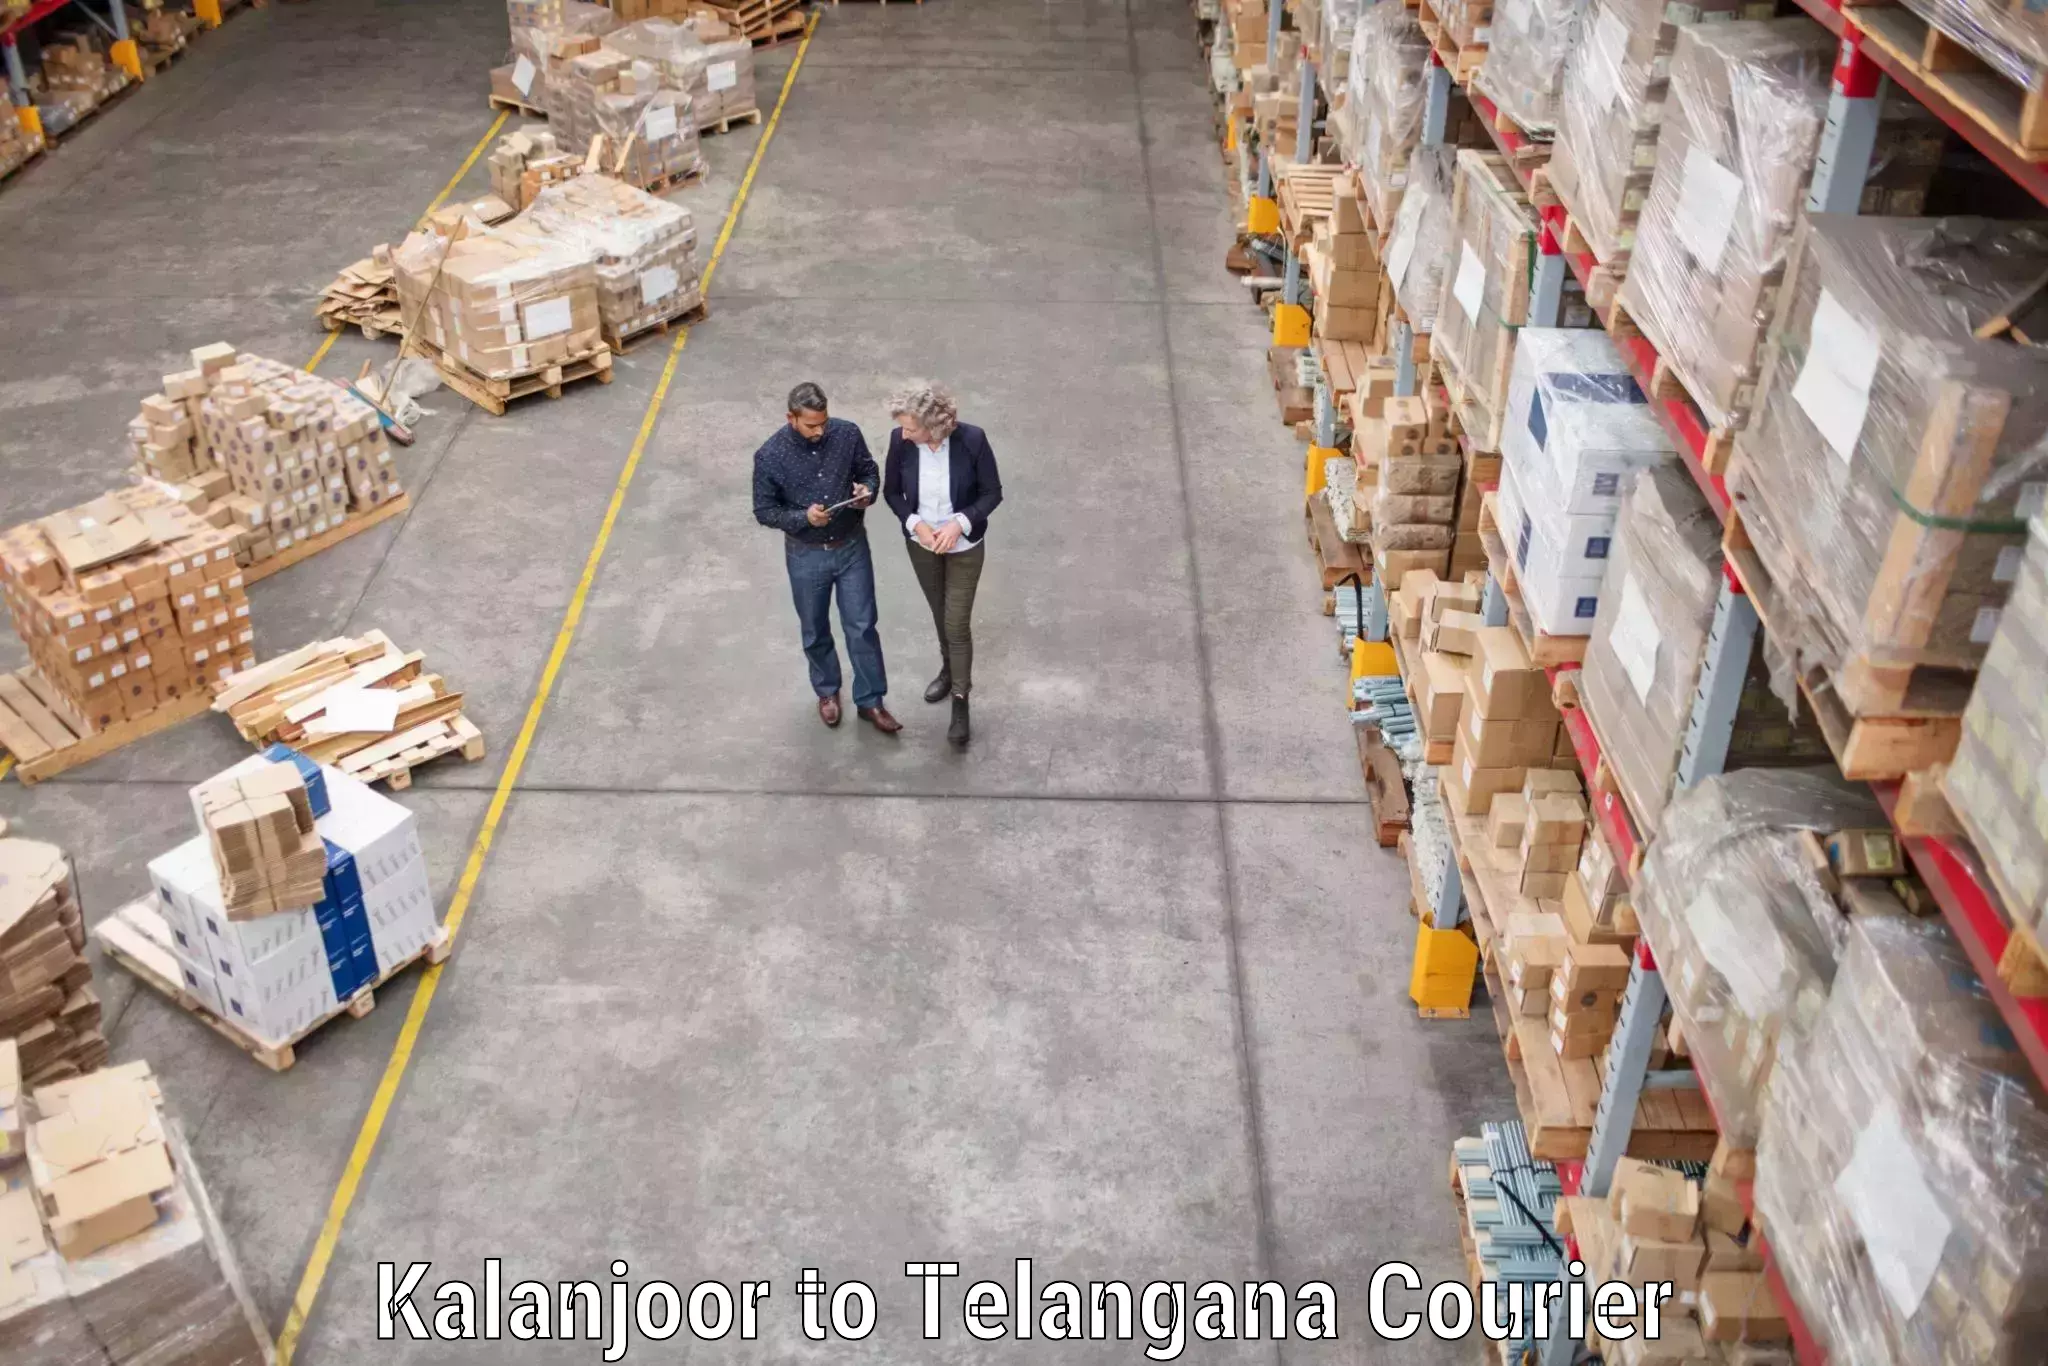 Trusted moving company Kalanjoor to Kaghaznagar